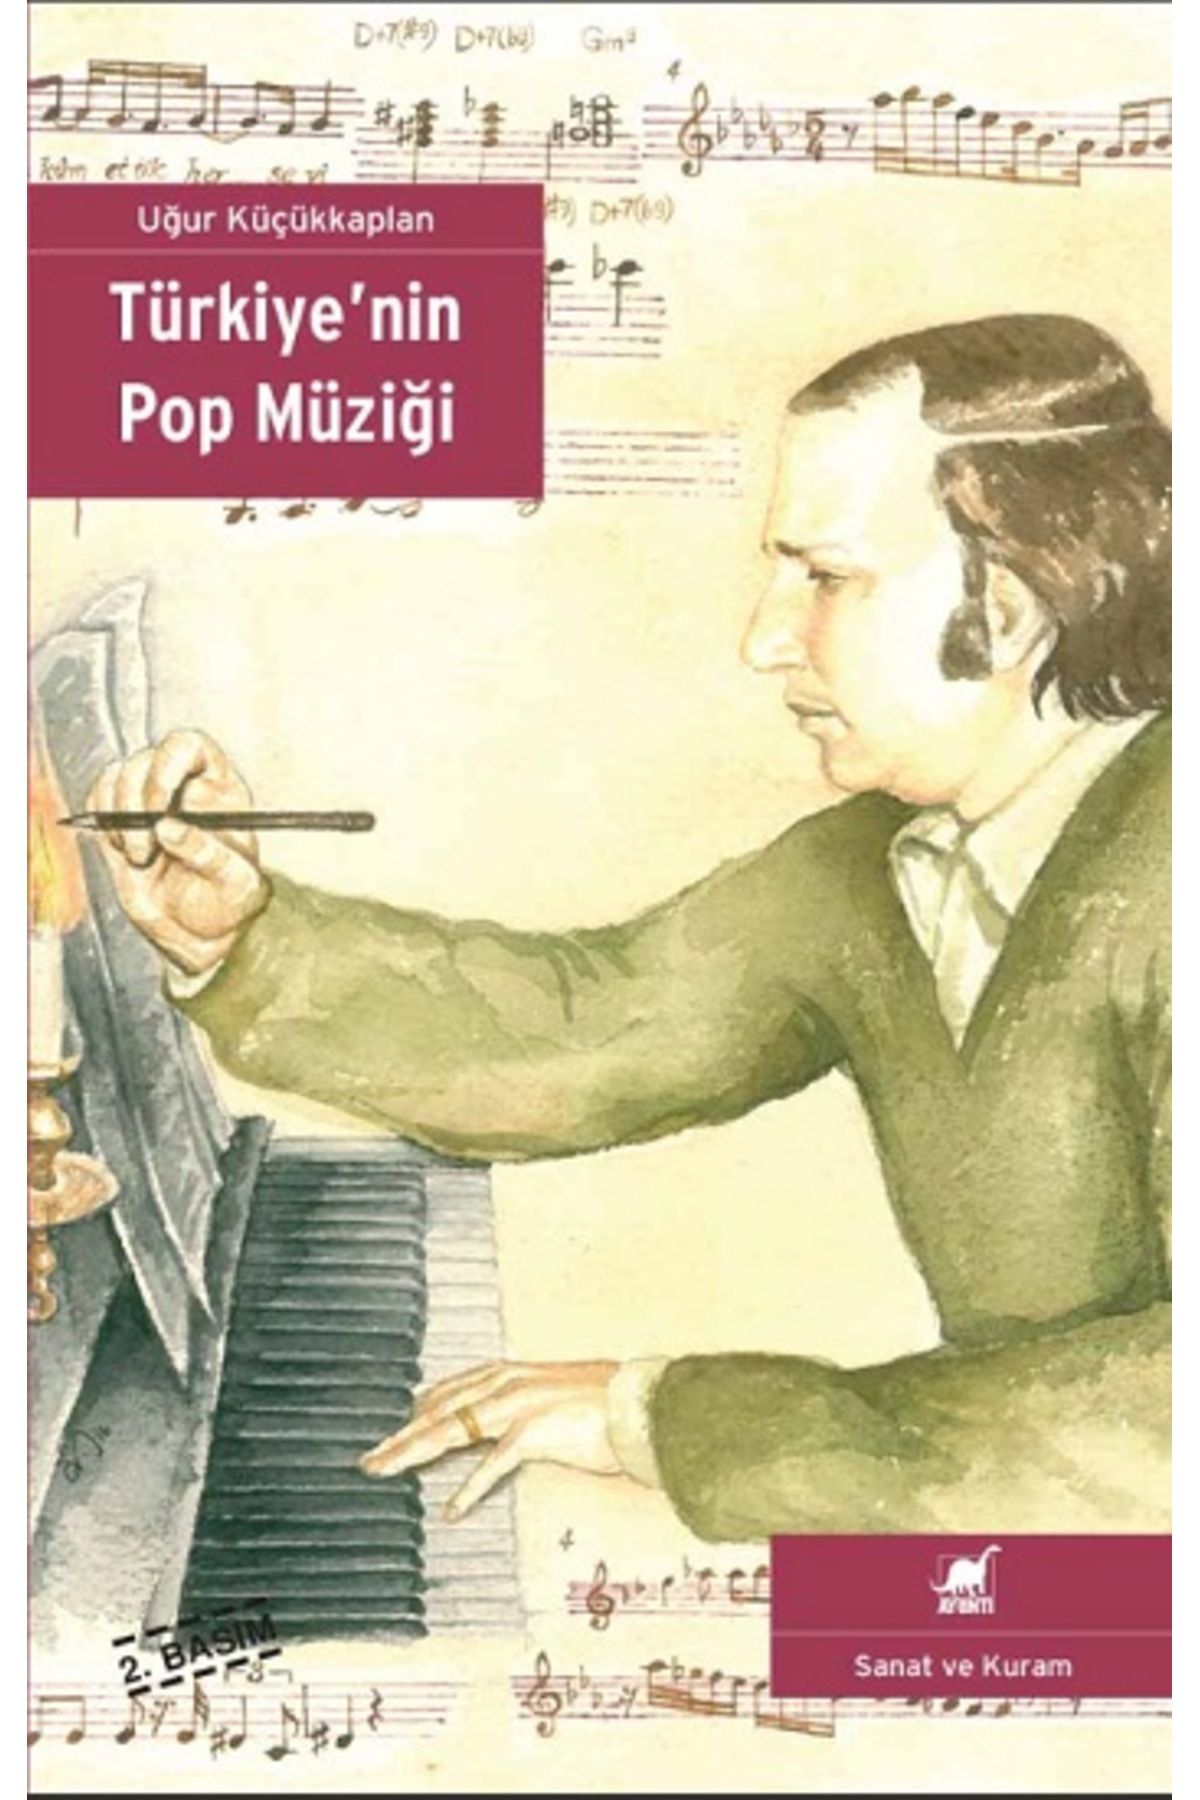 Ayrıntı Yayınları Türkiye'nin Pop Müziği kitabı - Uğur Küçükkaplan - Ayrıntı Yayınları